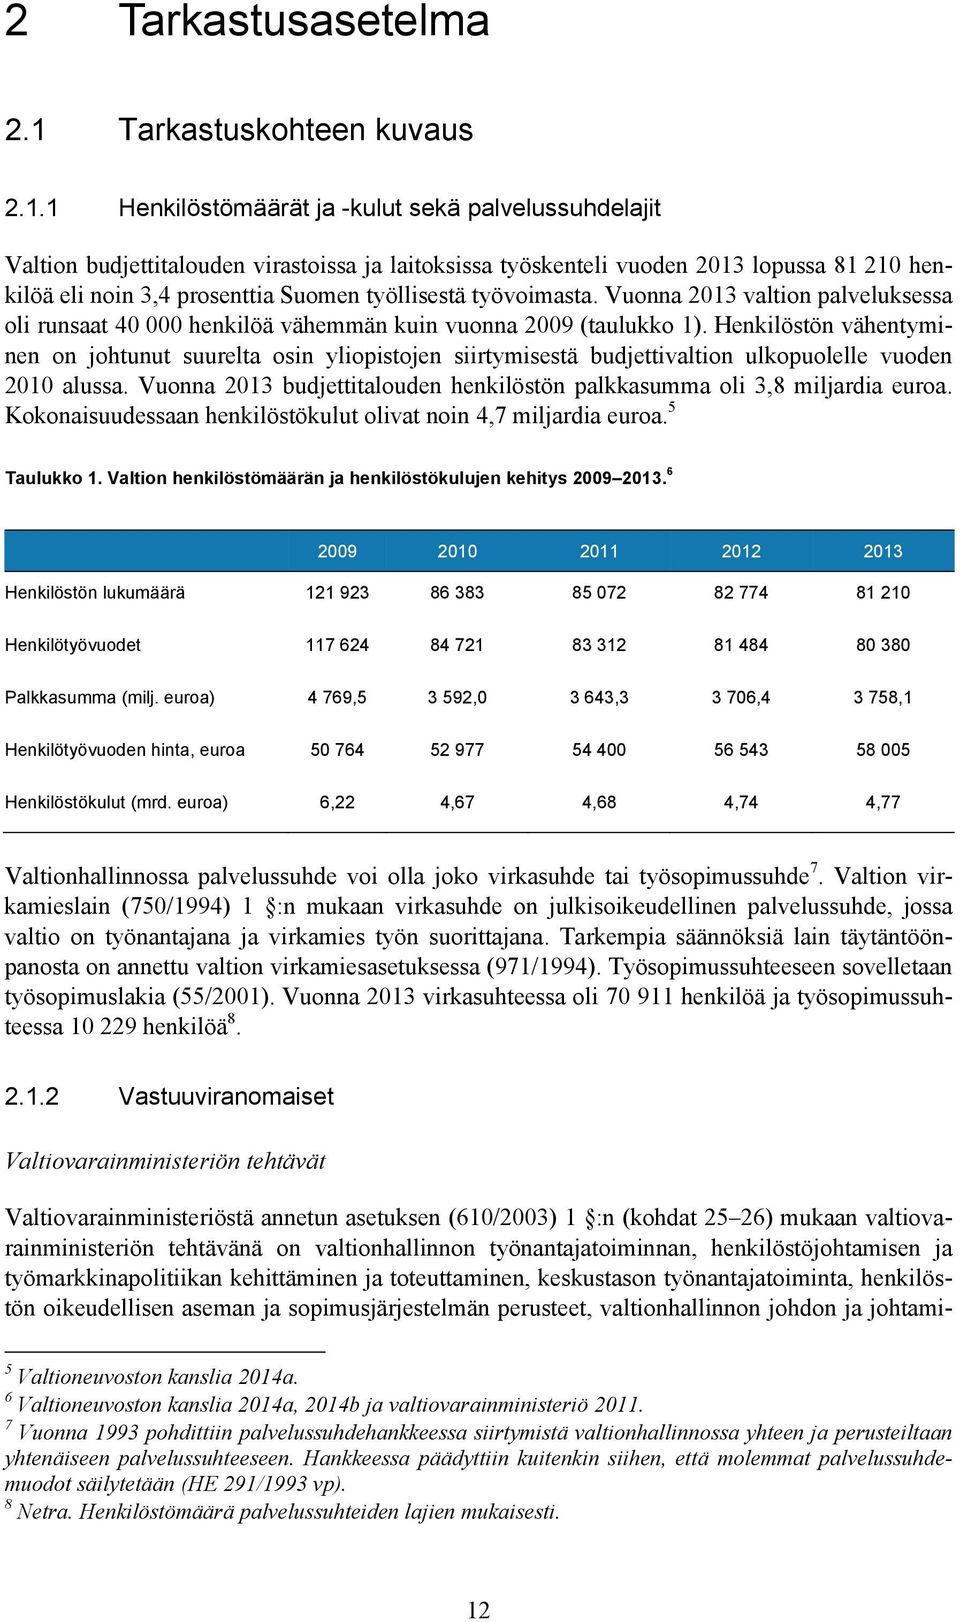 1 Henkilöstömäärät ja -kulut sekä palvelussuhdelajit Valtion budjettitalouden virastoissa ja laitoksissa työskenteli vuoden 2013 lopussa 81 210 henkilöä eli noin 3,4 prosenttia Suomen työllisestä